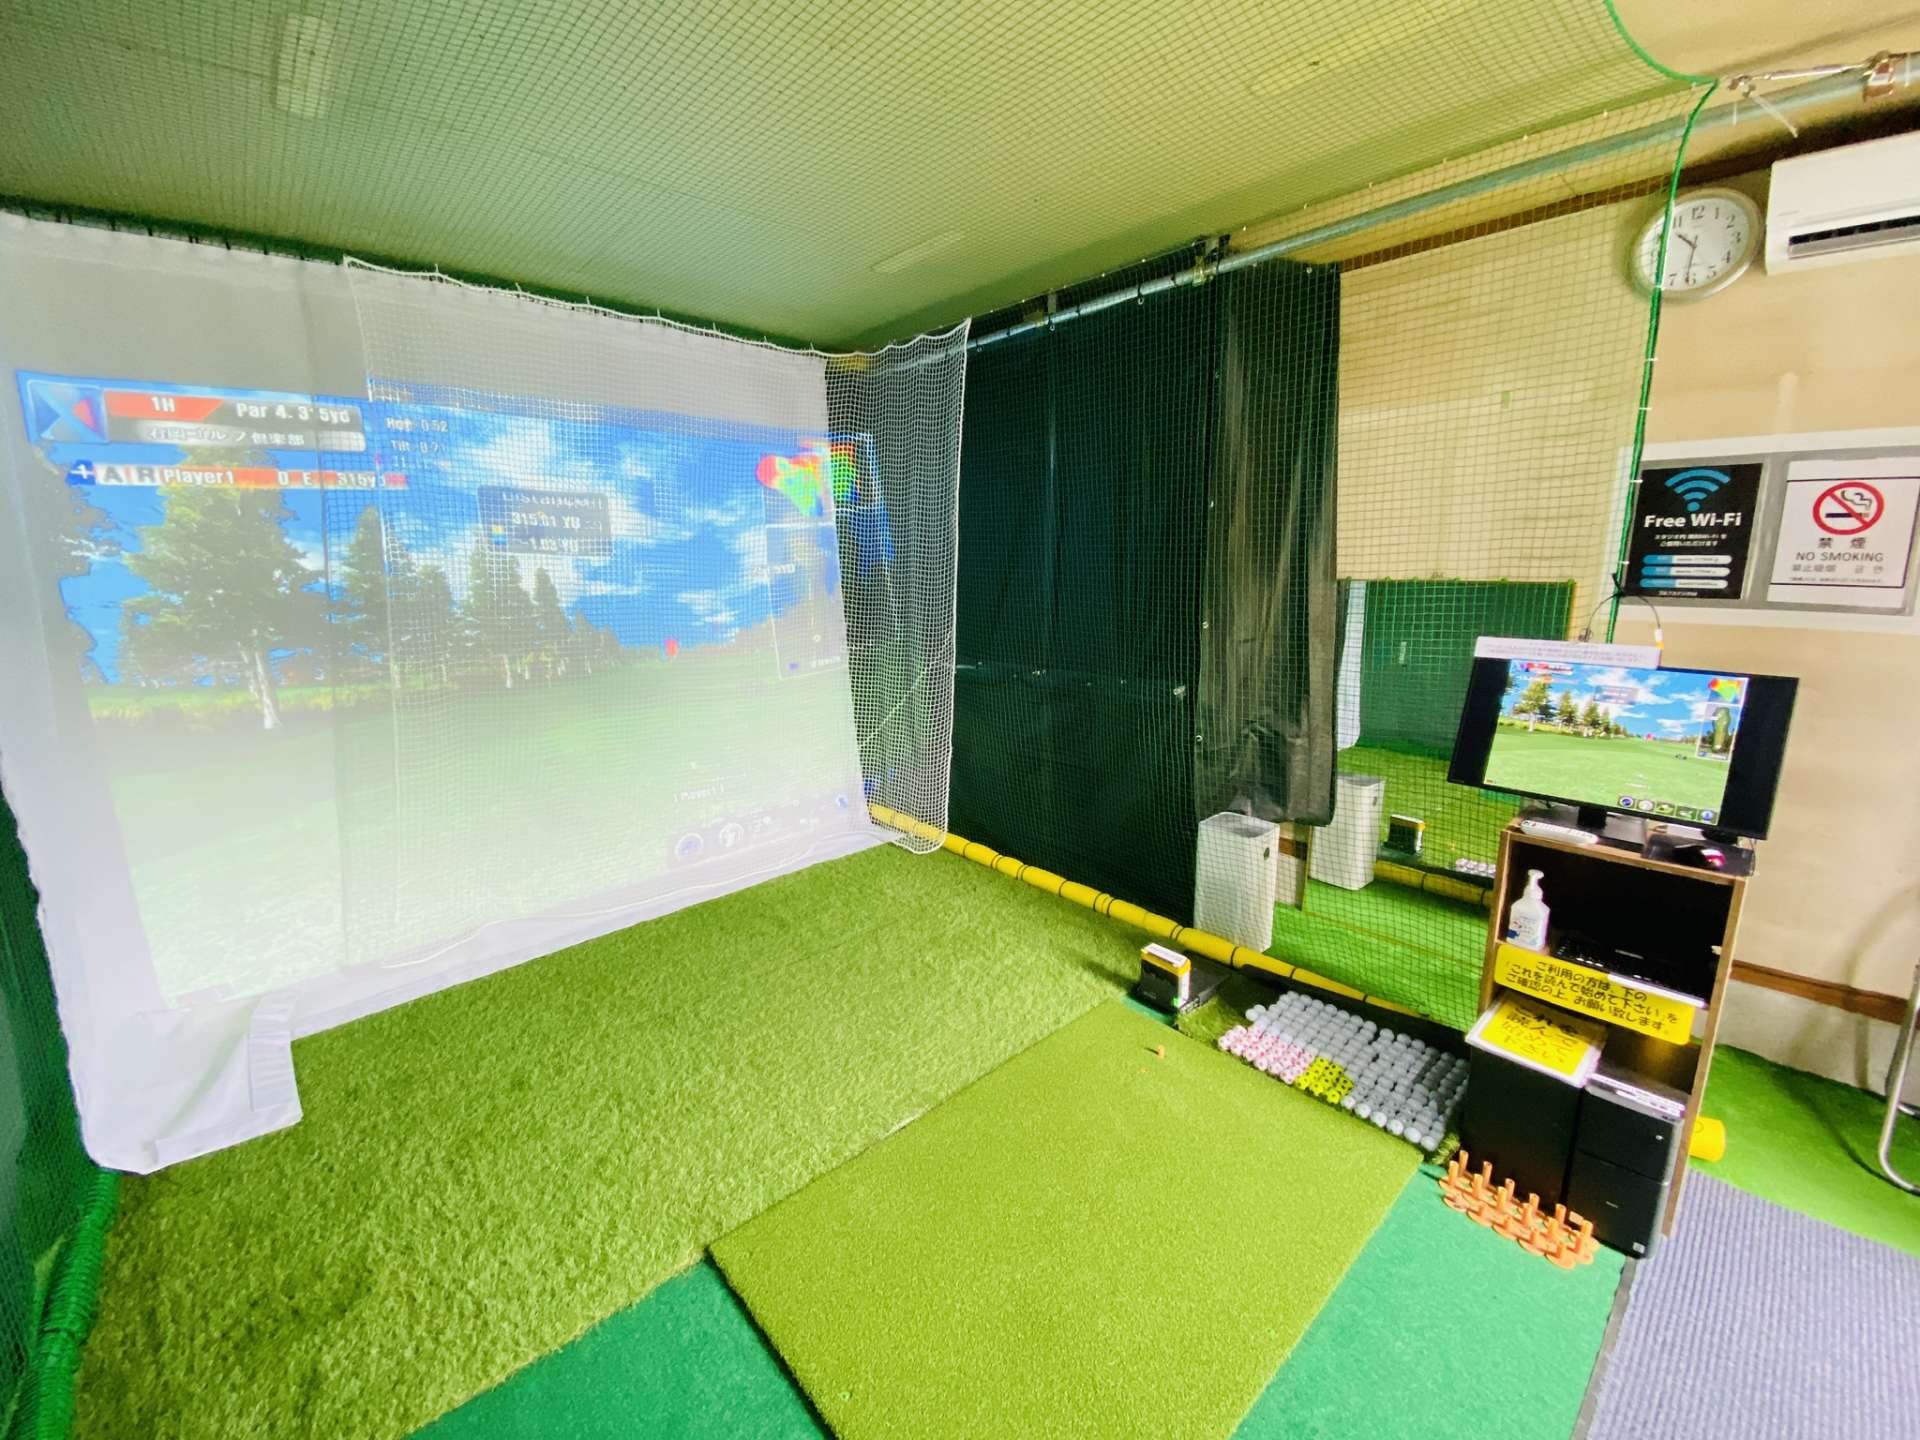 暖かい空間でゴルフの練習ができるお店と言えばゴルフスタジオＭ